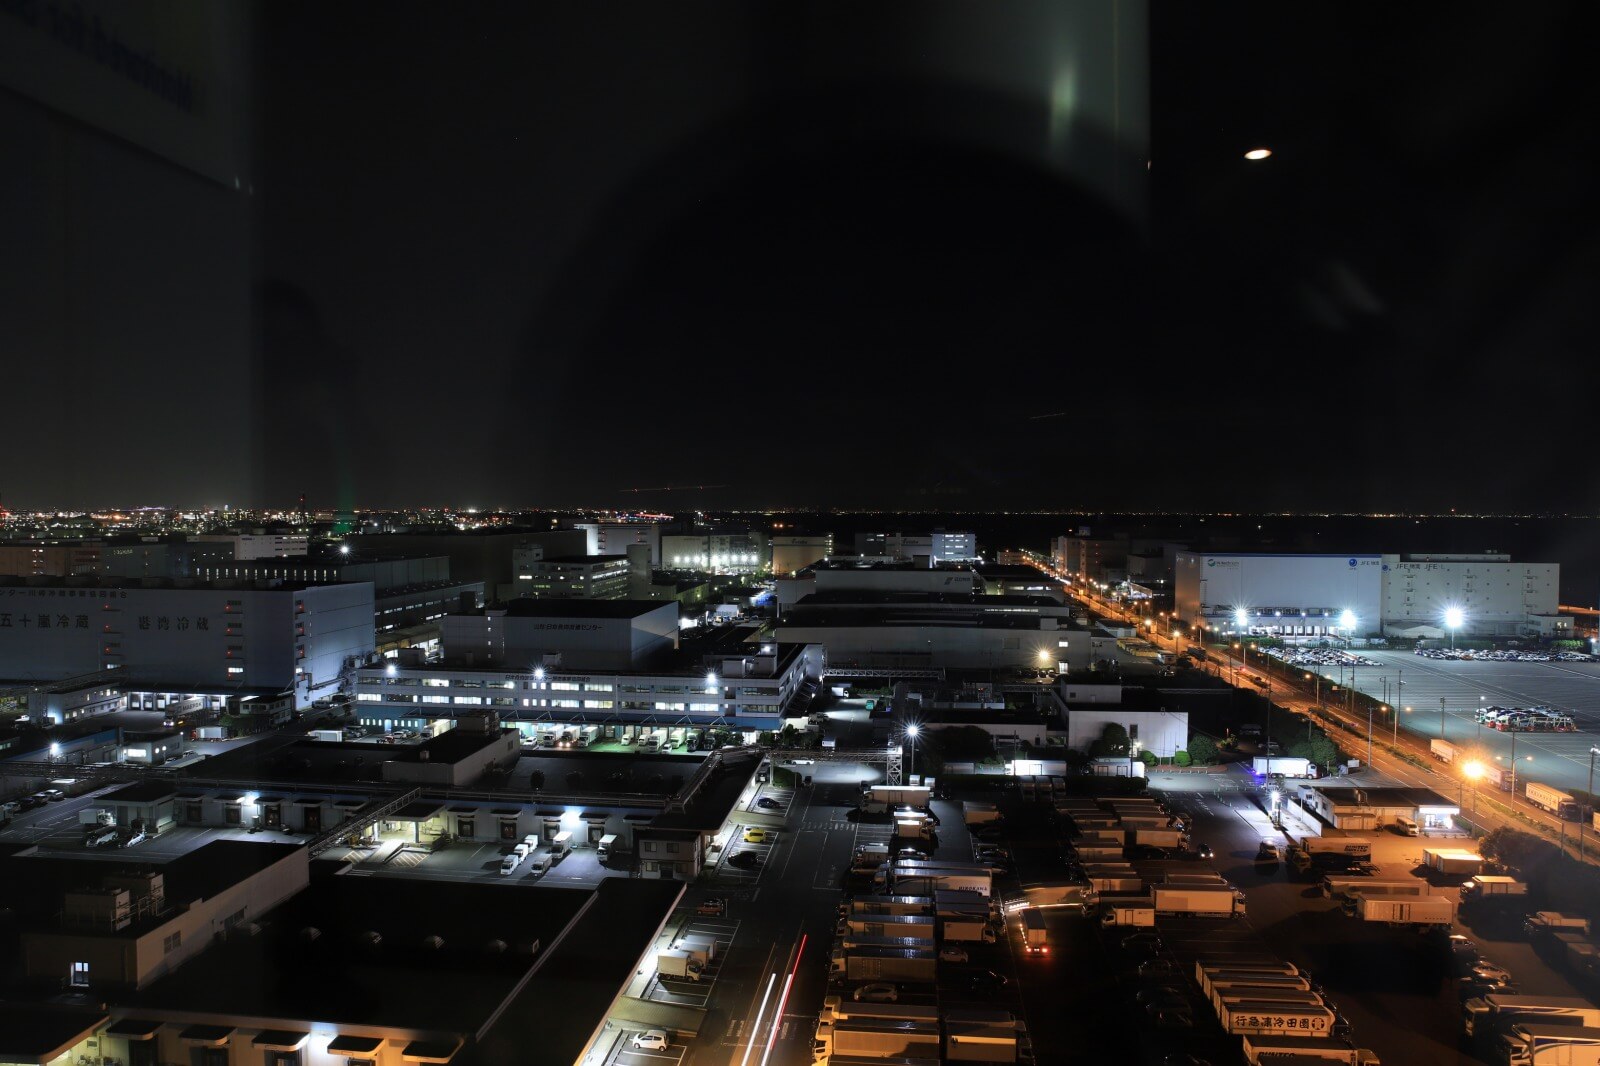 夜景写真家岩崎拓哉氏プレゼンツ こんな写真が撮りたい 工場夜景撮影 ベルボン株式会社